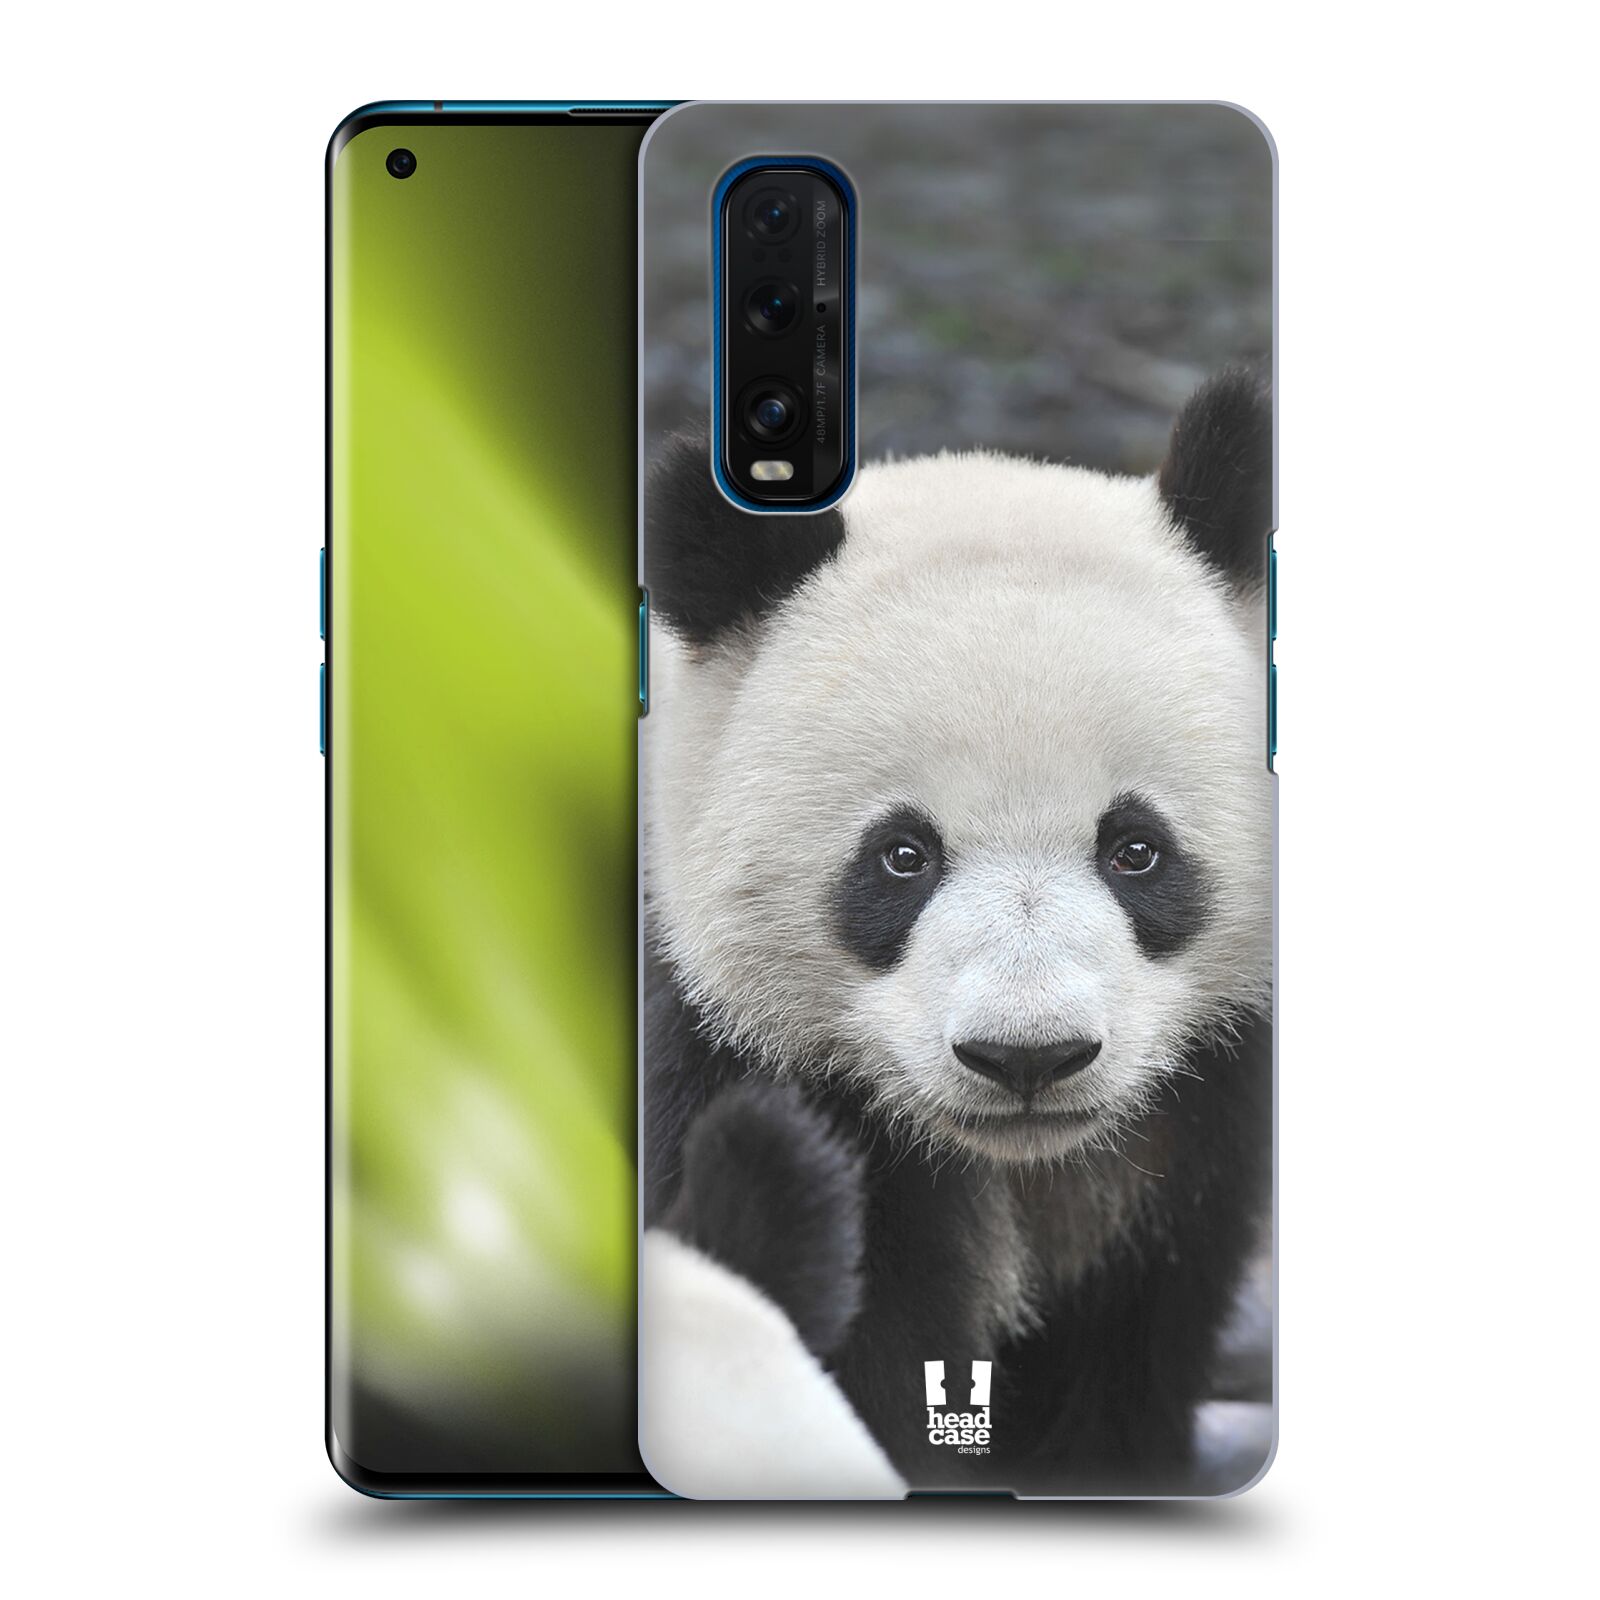 Zadní obal pro mobil Oppo Find X2 - HEAD CASE - Svět zvířat medvěd panda